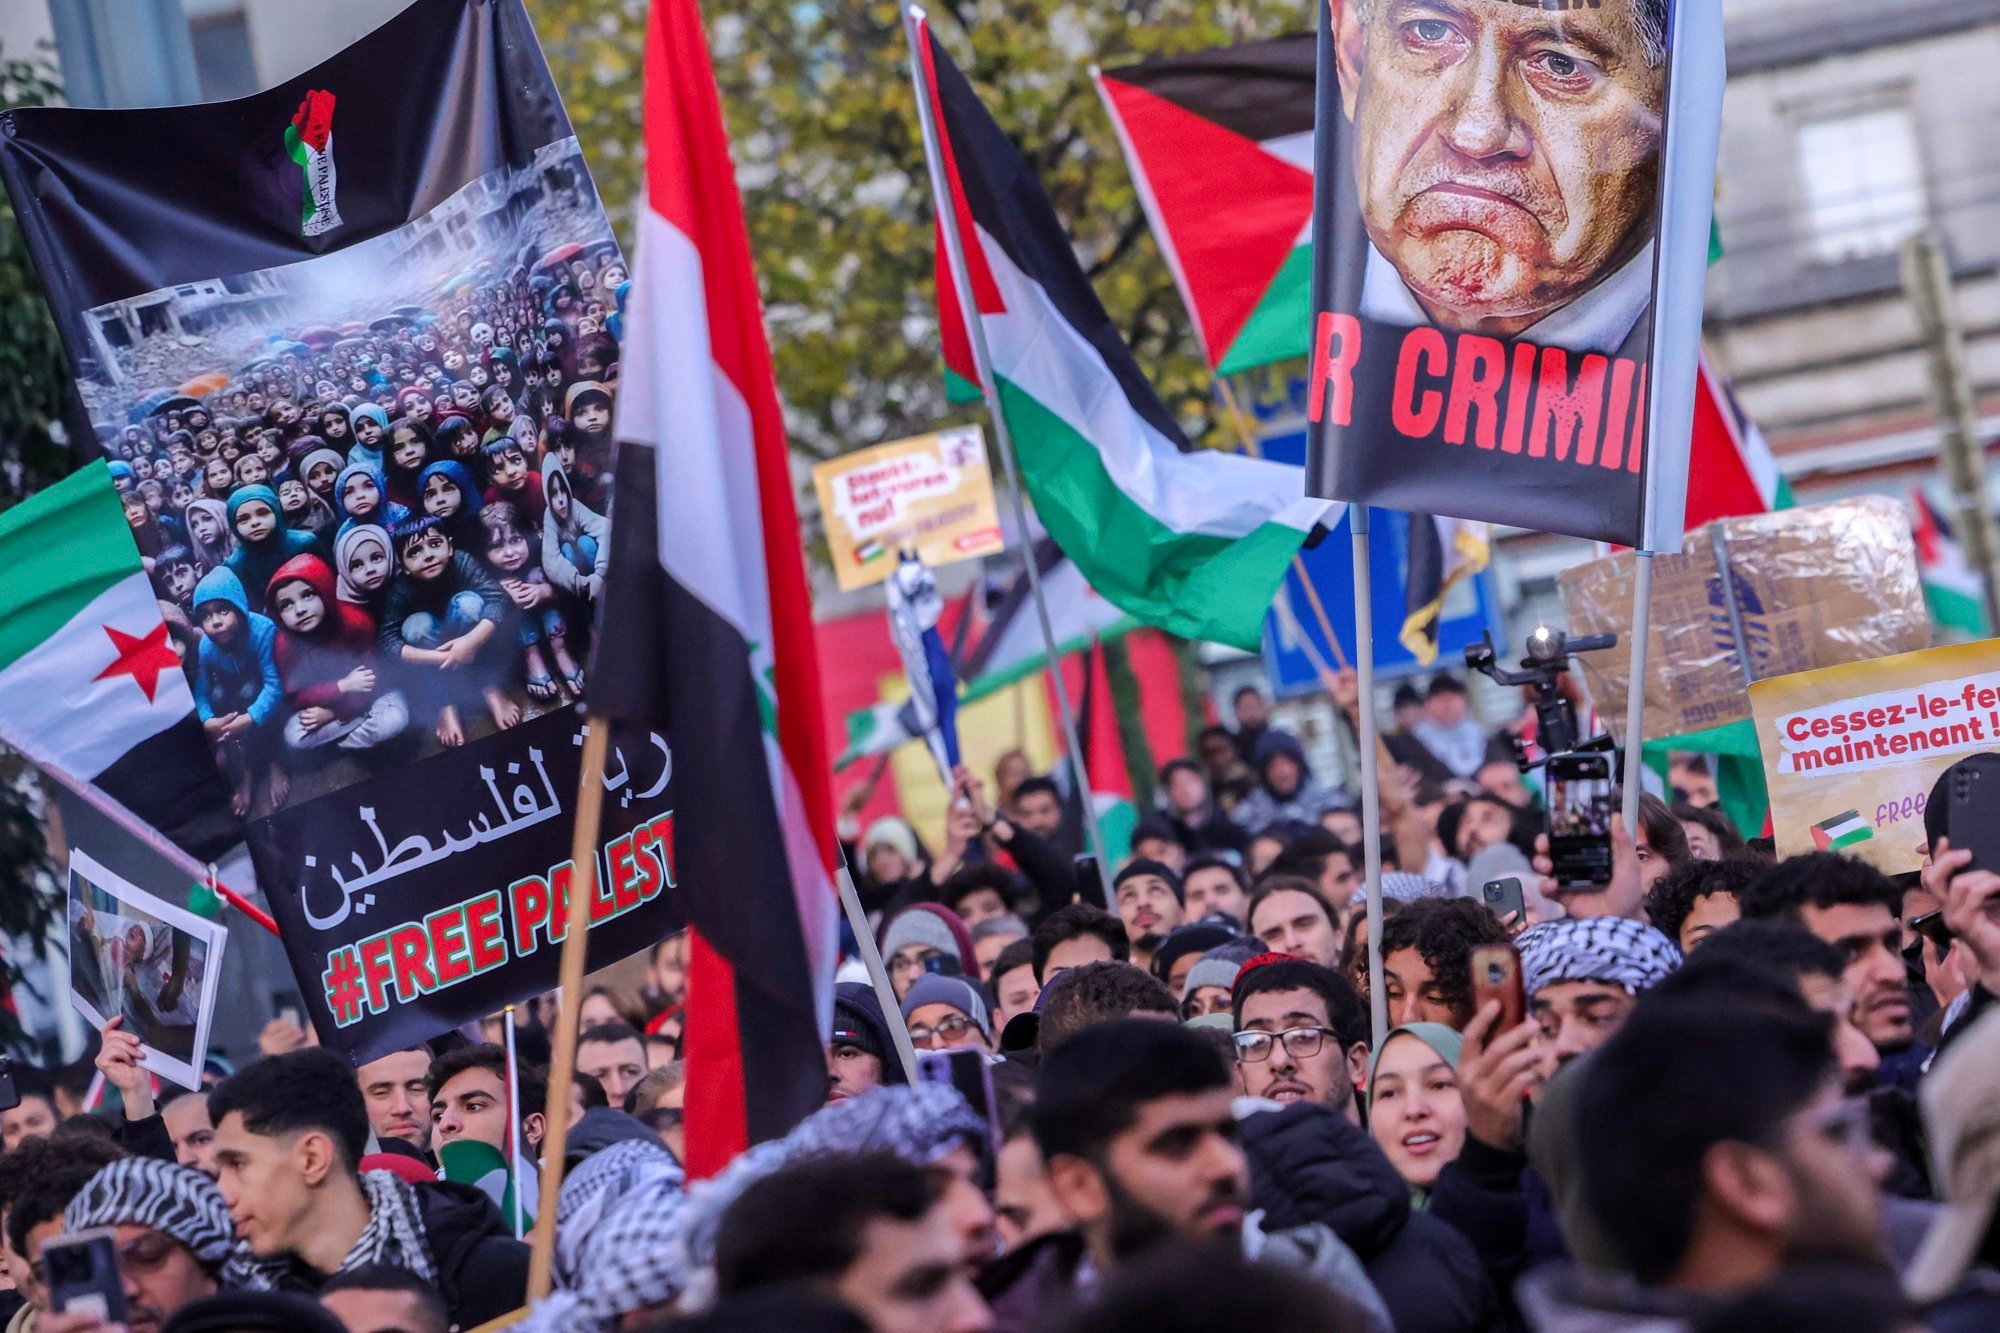 82 arrestados en Londres mientras contramanifestantes interrumpían una manifestación pro palestina